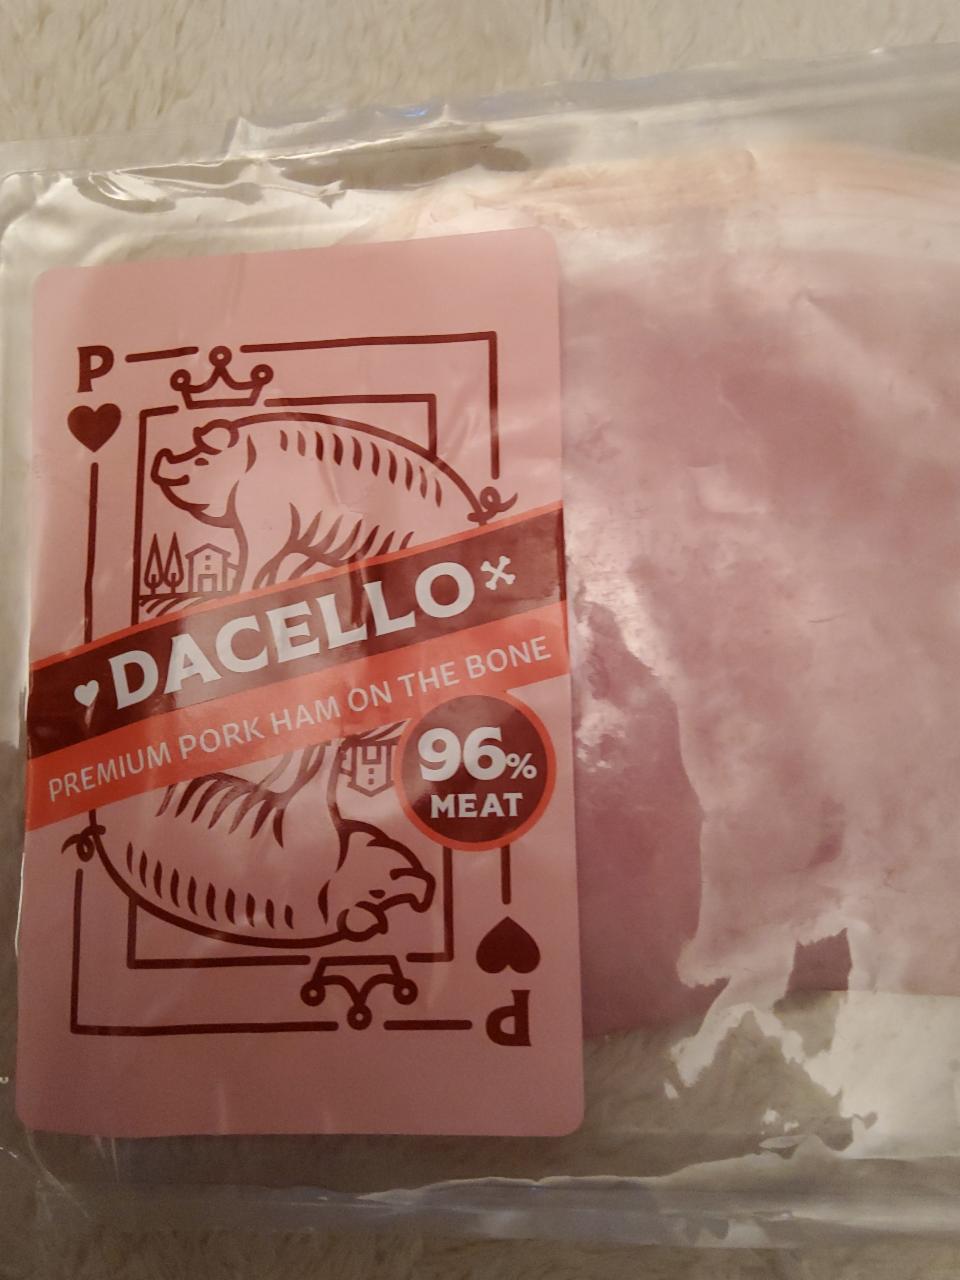 Fotografie - Premium pork ham on the bone 96% (šunka od kosti 96% masa) Dacello